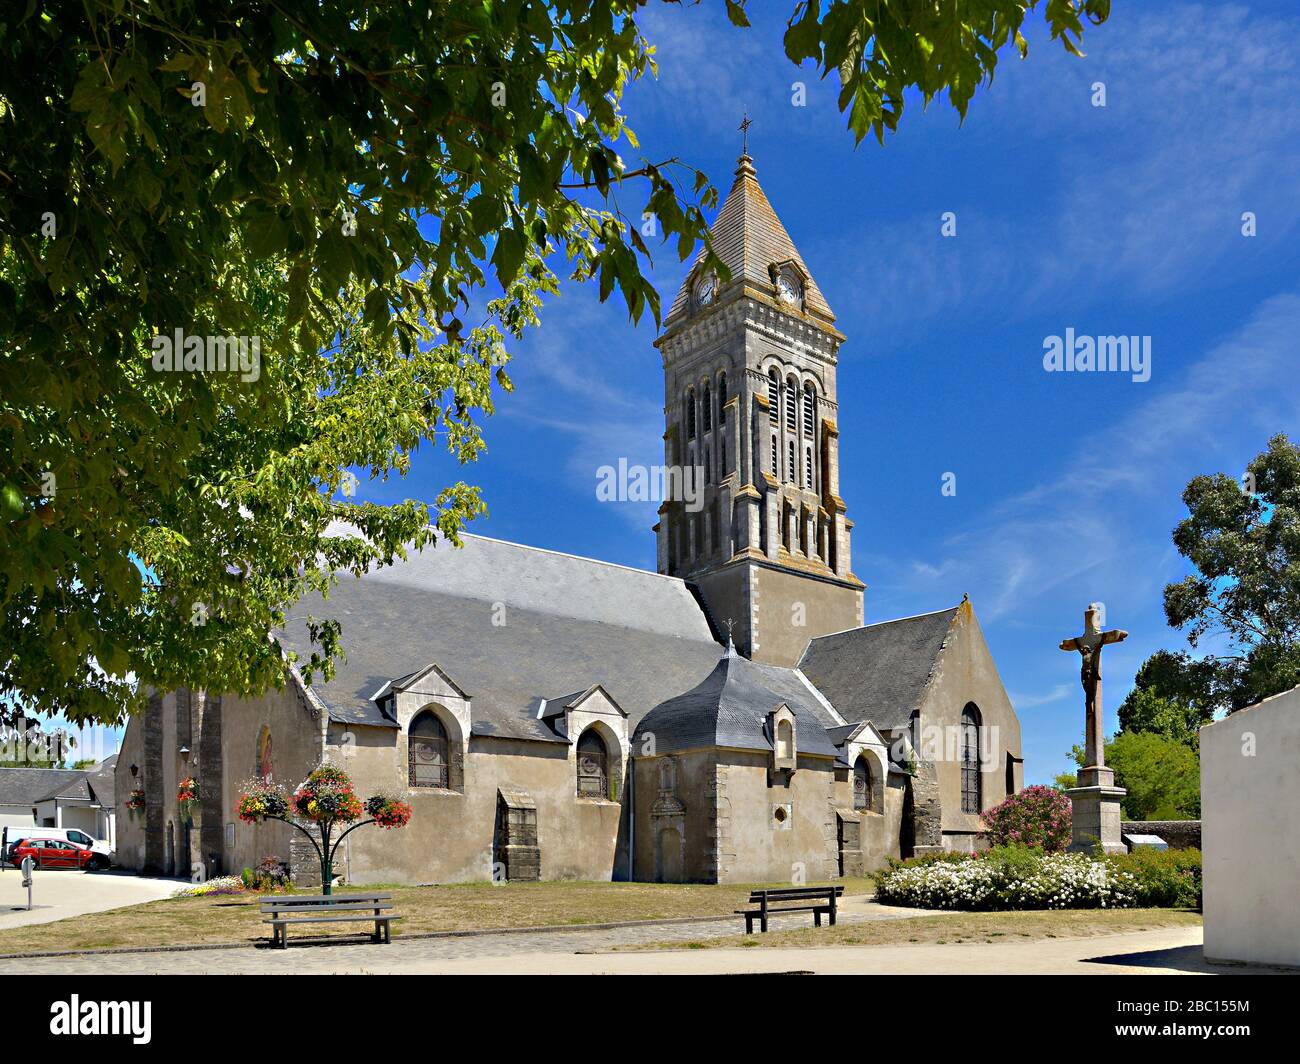 Church among tree of Noirmoutier en l’Ile in Pays de la Loire, region in western France Stock Photo